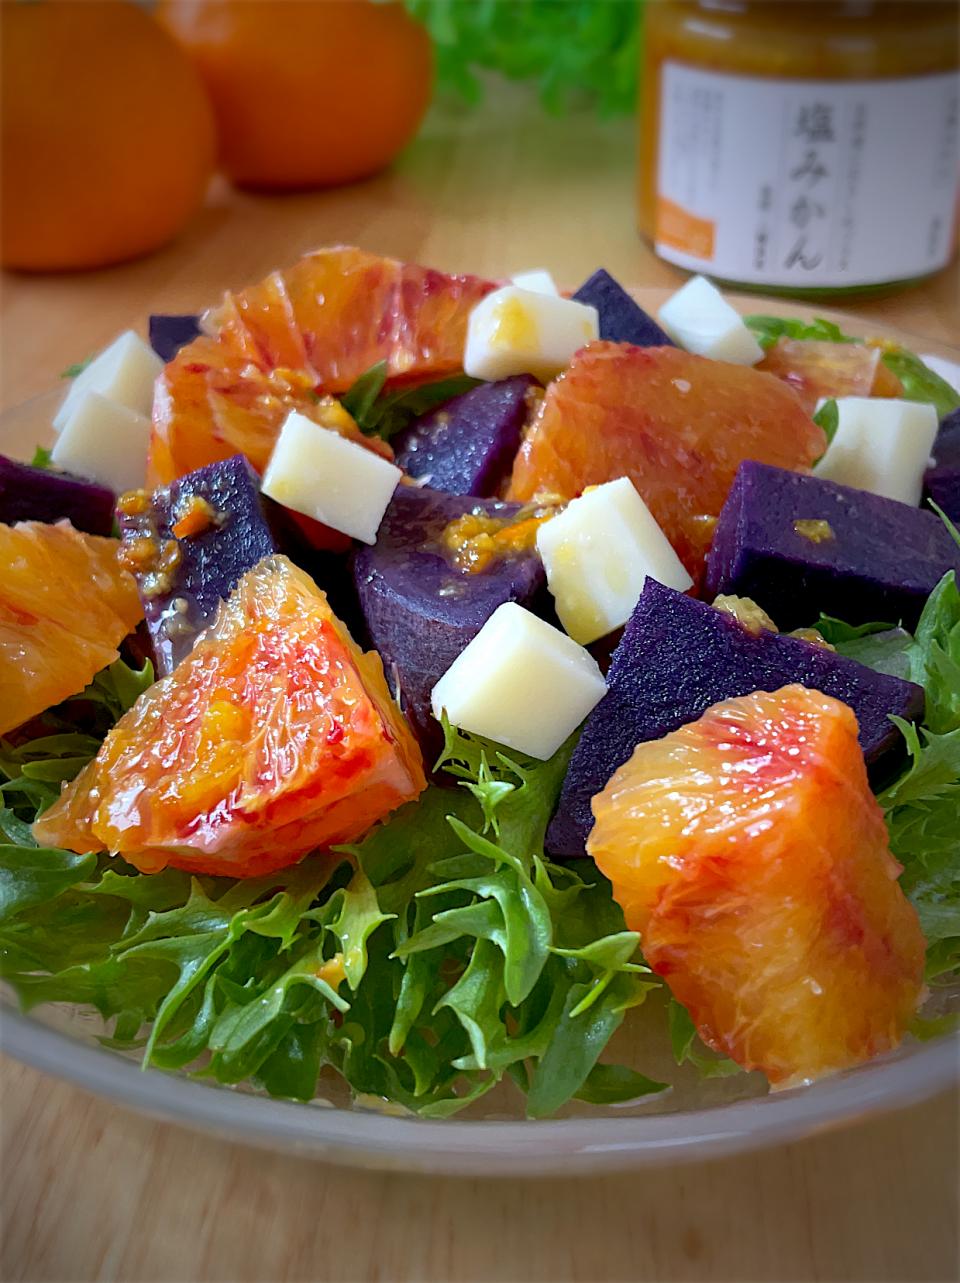 ブラッドオレンジと紫芋とフリルレタスとゴーダチーズの塩みかんサラダ🥗